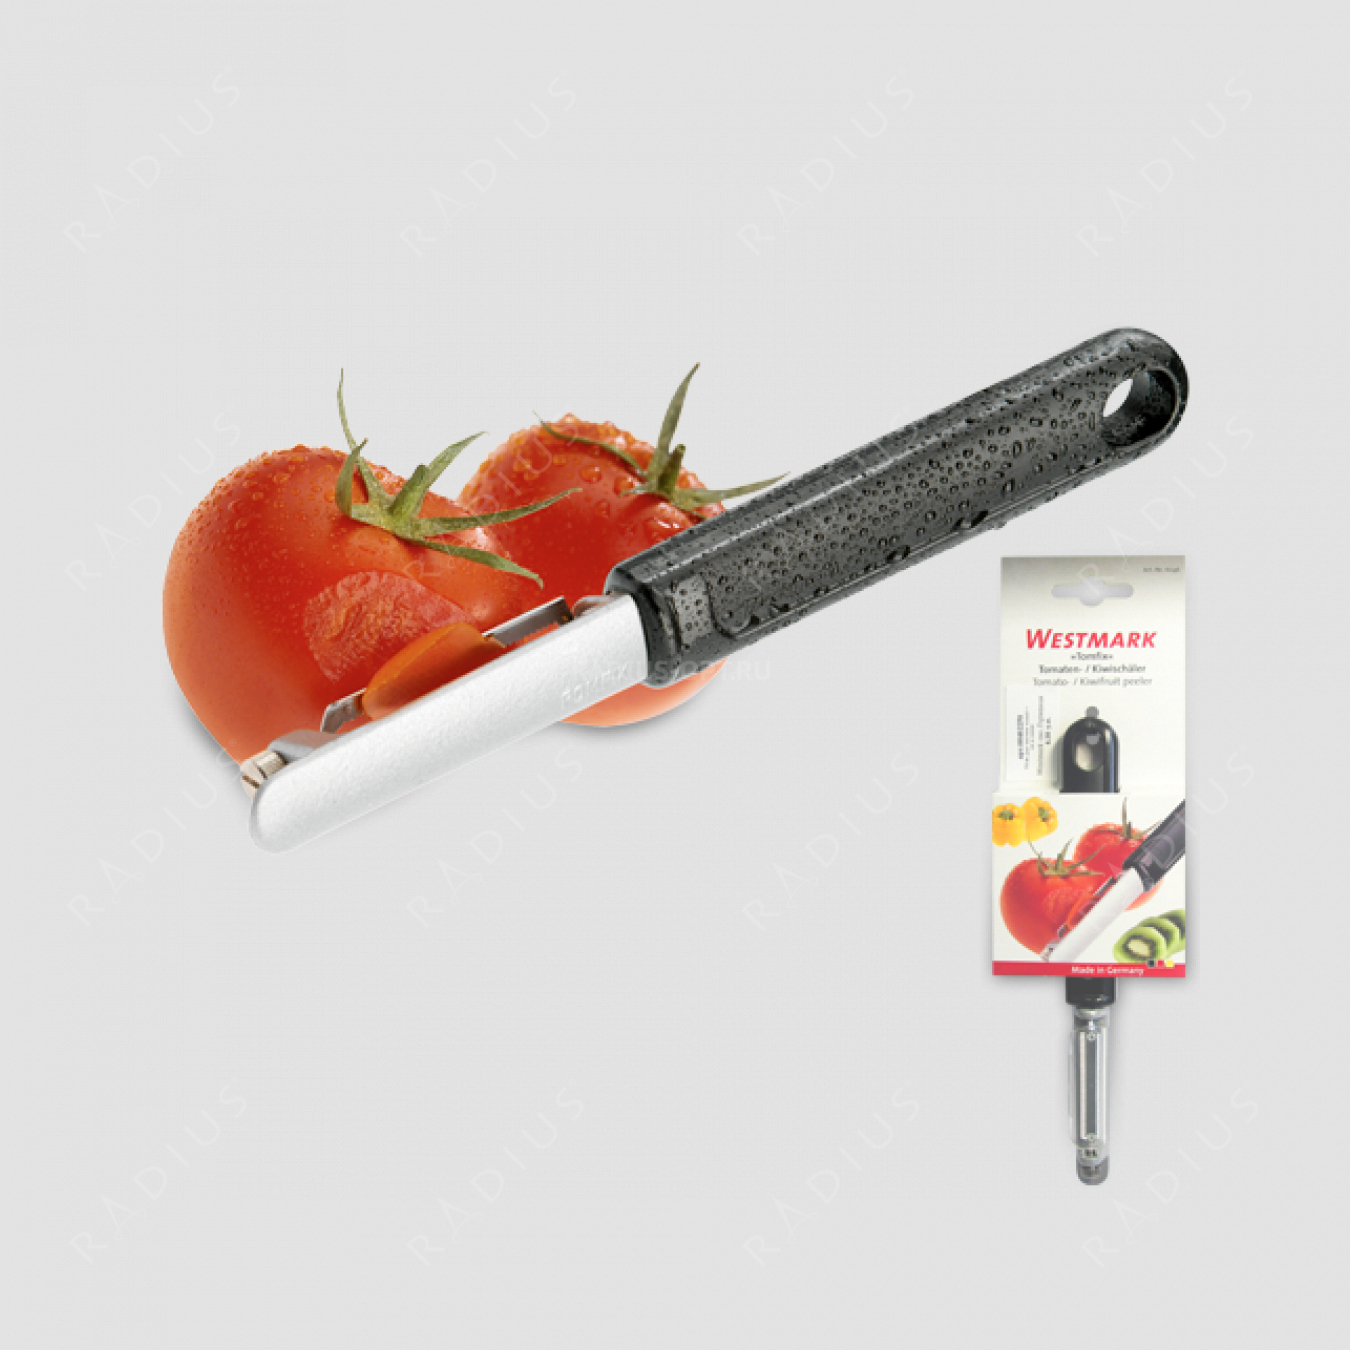 Нож для чистки томатов и киви, с плавающим лезвием, алюминий/сталь, серия Coated Aluminium, WESTMARK, Германия